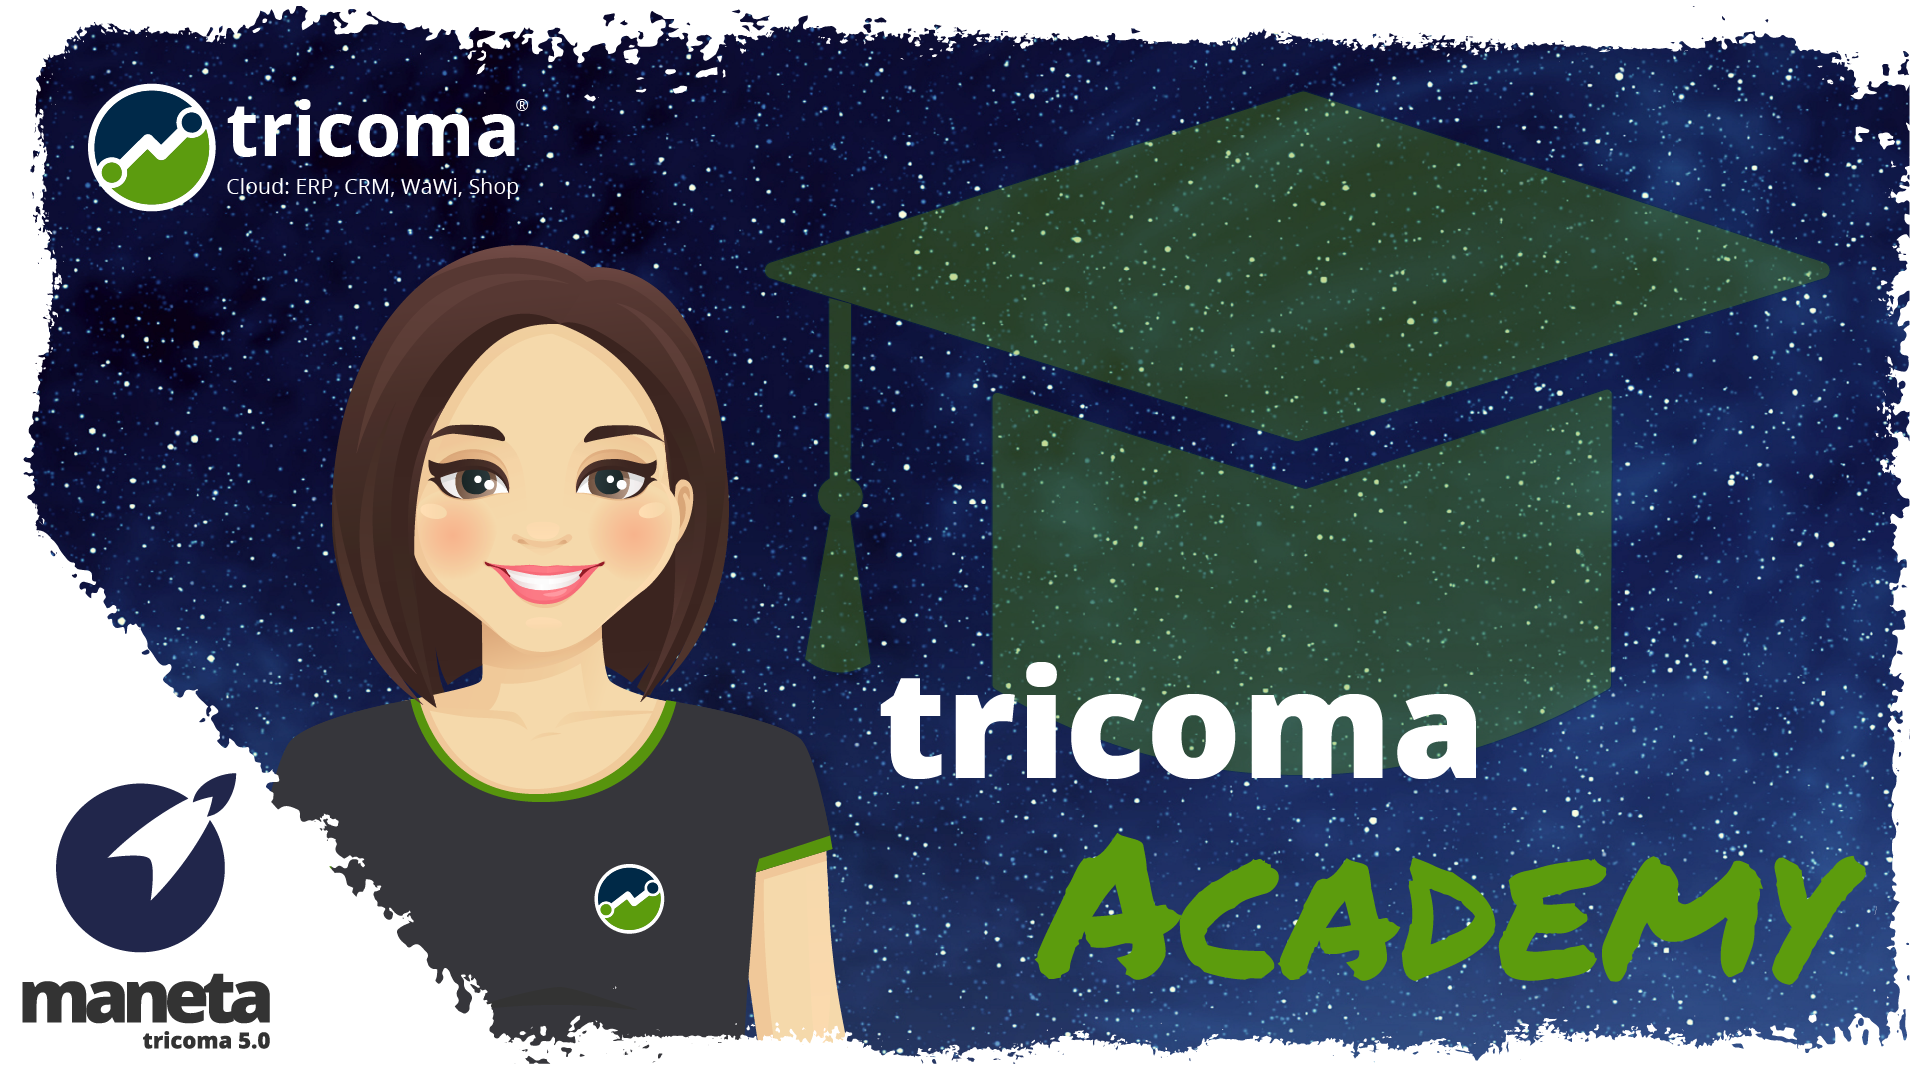 Ohne Umwege zum Experten: mit der tricoma-Academy weiterbilden